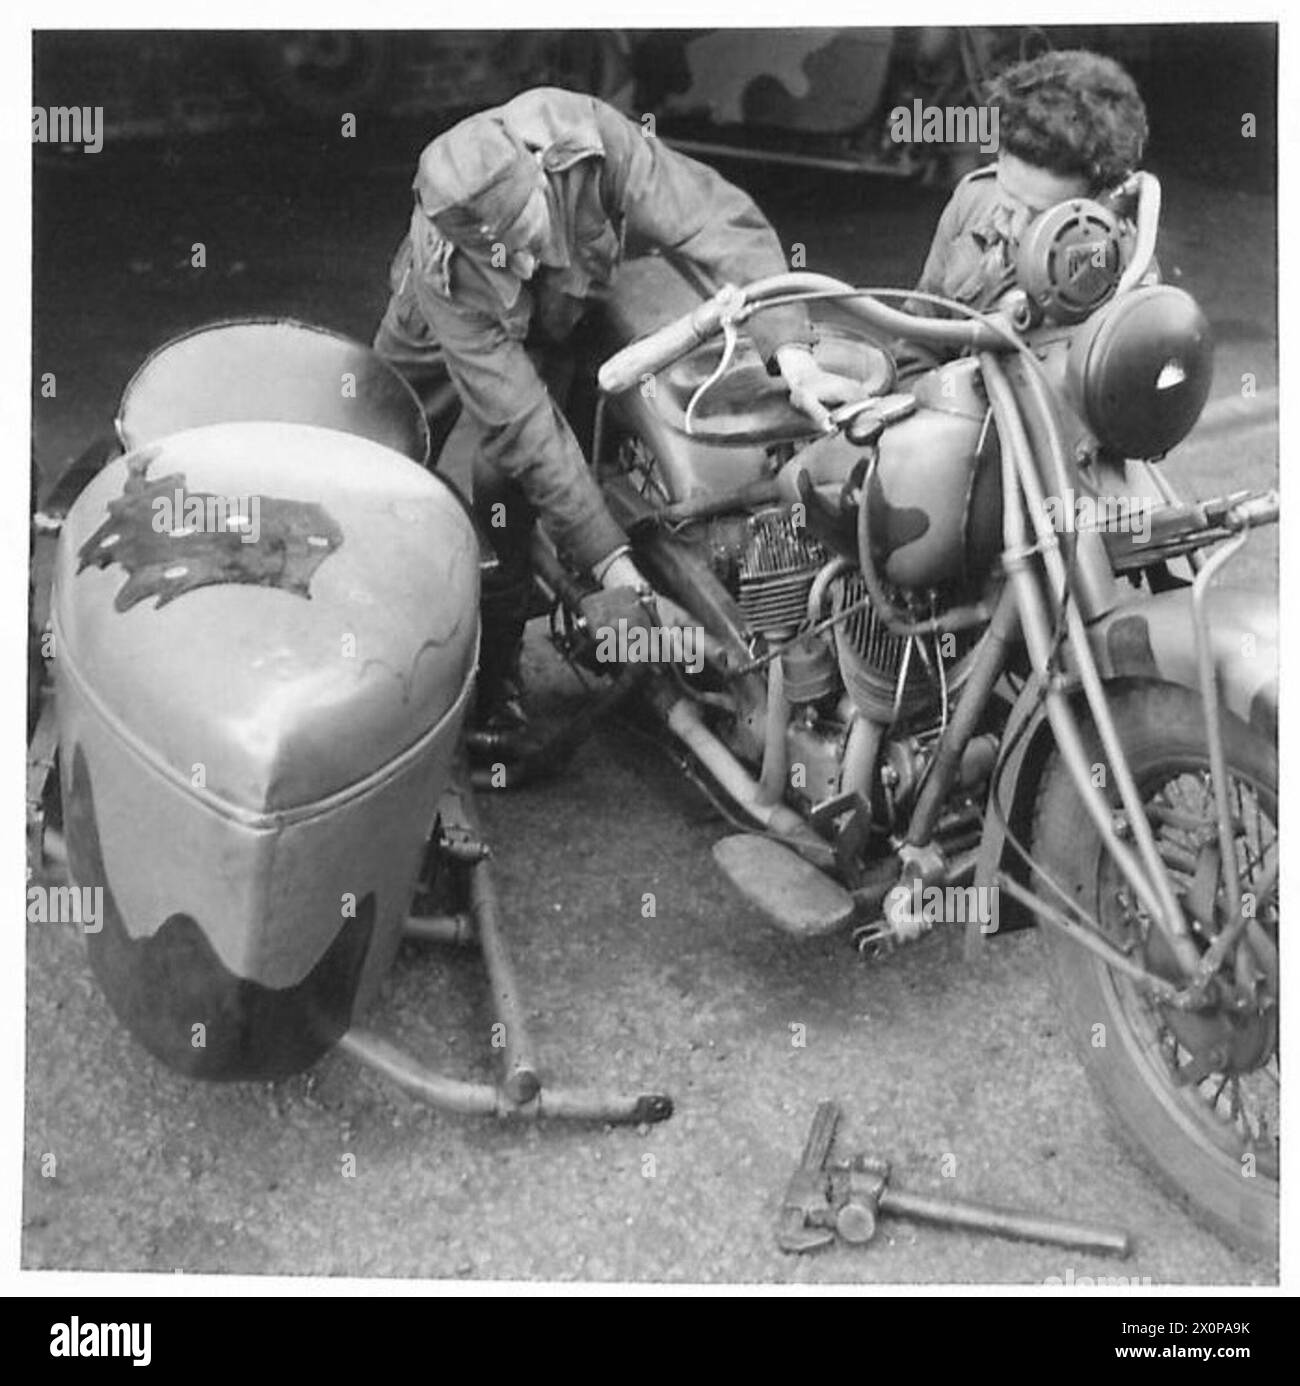 L'ARMÉE POLONAISE EN GRANDE-BRETAGNE, 1940-1947 - mécanicien vérifiant une combinaison de motocyclettes dans le moteur. Notez une carte de la Pologne, divisée entre l'Allemagne nazie et l'Union soviétique, peinte sur le side-car comme une partie du camouflage de la moto. M. Don Sutton, représentant l'American Newspaper Enterprise Association, a visité certaines unités du 1er corps polonais en Écosse en juillet 1942. Au cours de sa visite, il a été témoin de certaines activités quotidiennes des troupes polonaises. La visite de M. Sutton (et les photographies ci-dessous) visait à faire connaître l'effort de guerre polonais aux États-Unis. Noir et blanc, Armée polonaise, Pol Banque D'Images